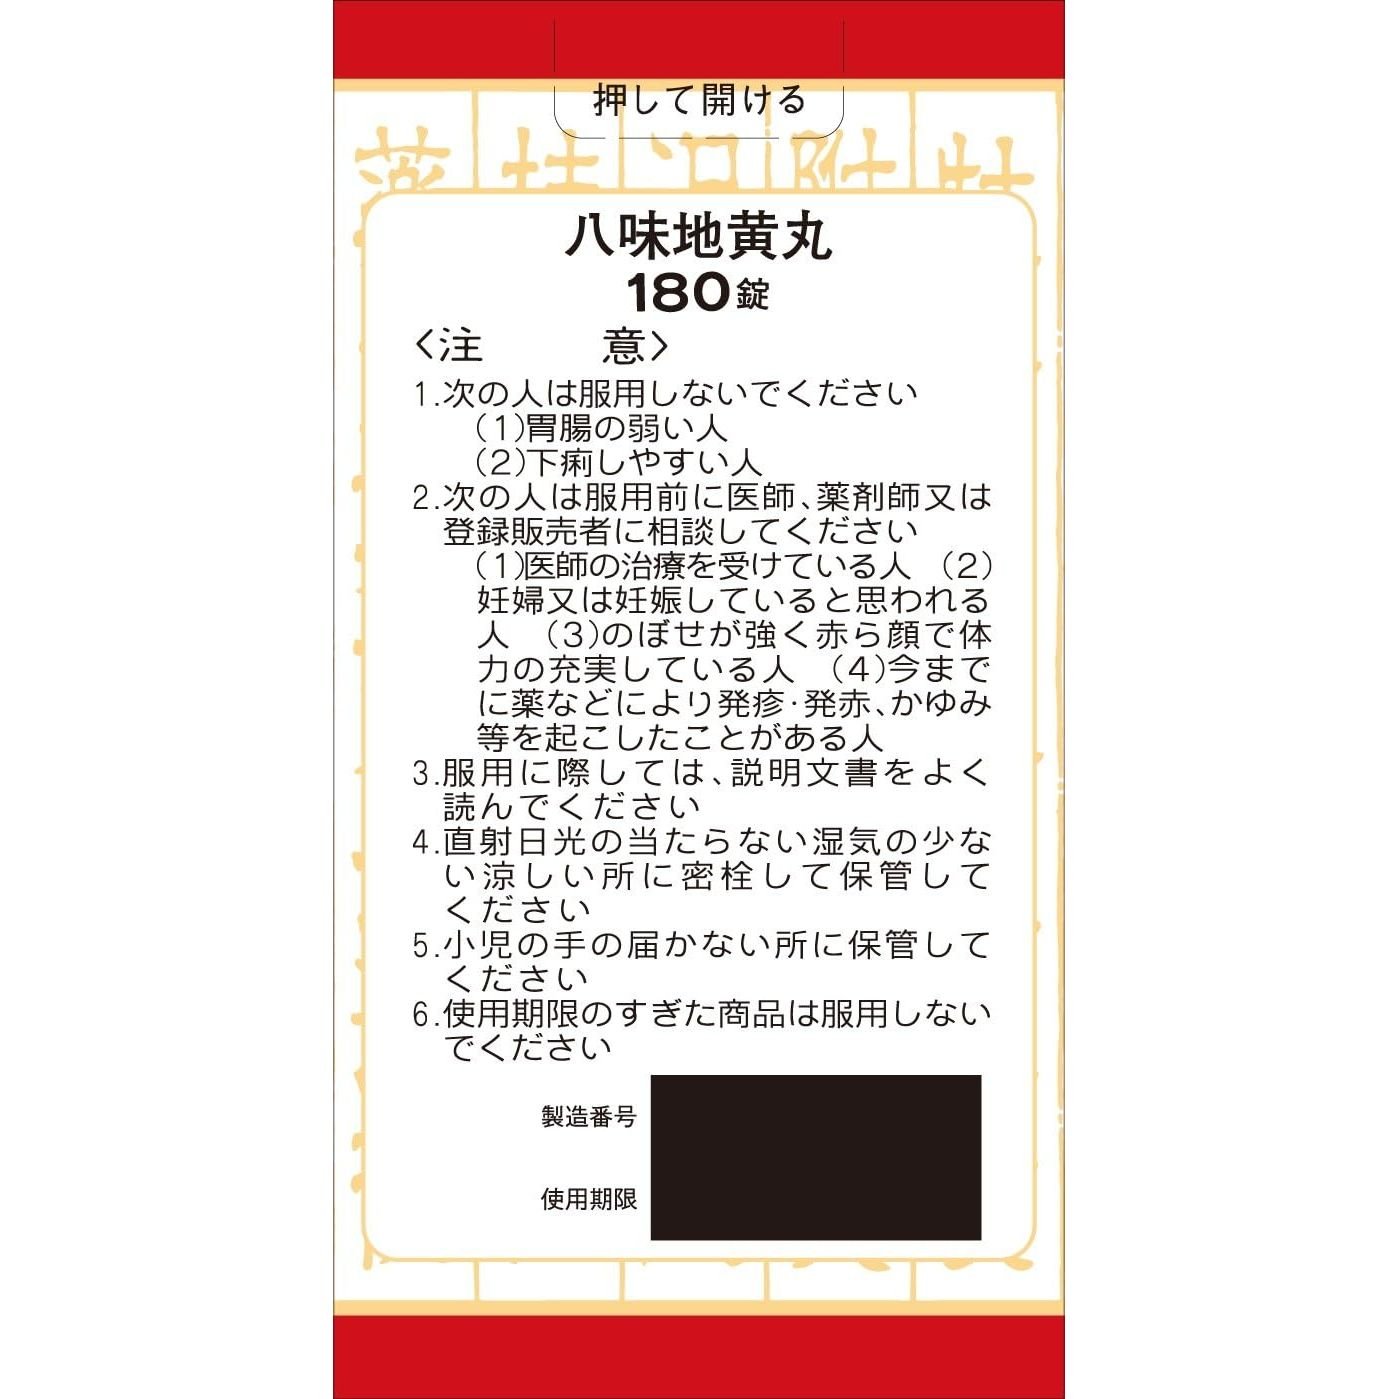 [第2類医薬品] Kracie製藥 八味地黄丸料 針對排尿困難/尿頻 - 小熊藥妝 - 日本藥妝直送台灣